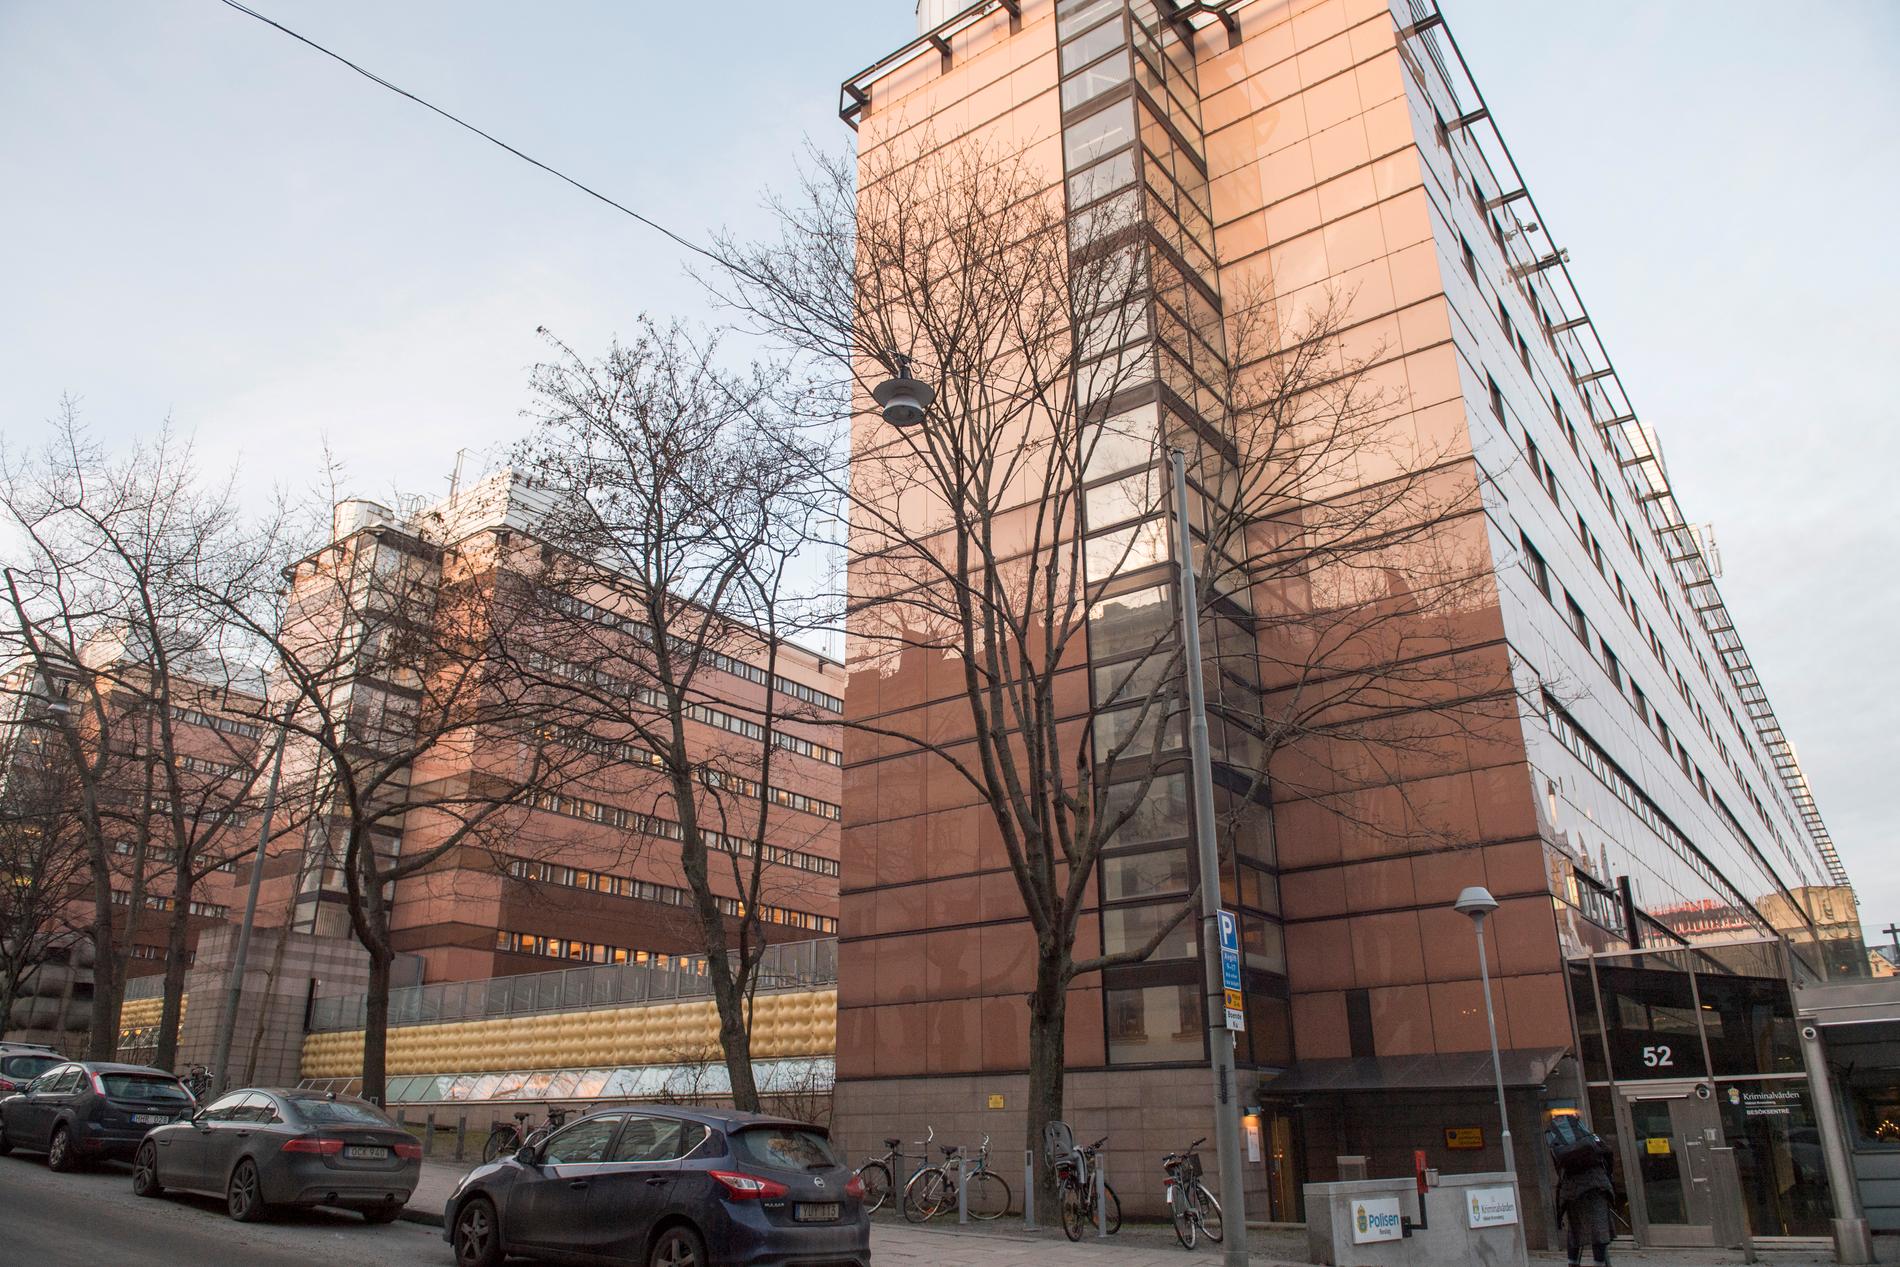 Kronobergshäktet i centrala Stockholm, där ASAP Rocky tillbringade tiden i väntan på rättegång.